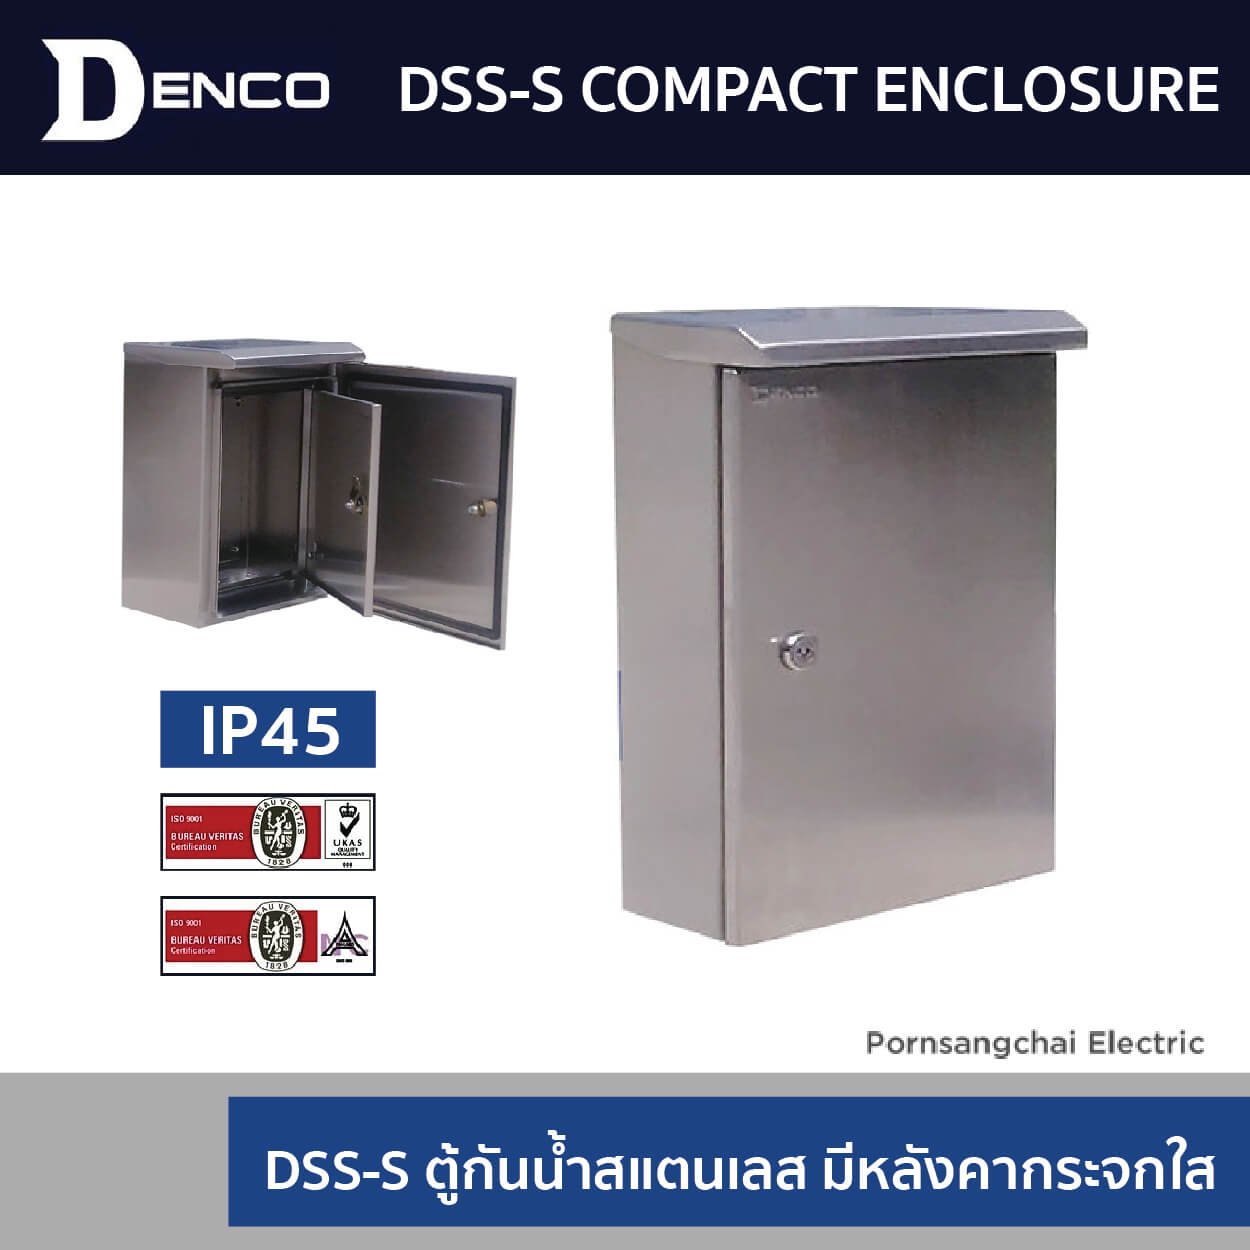 DSS-S Compact Enclosure